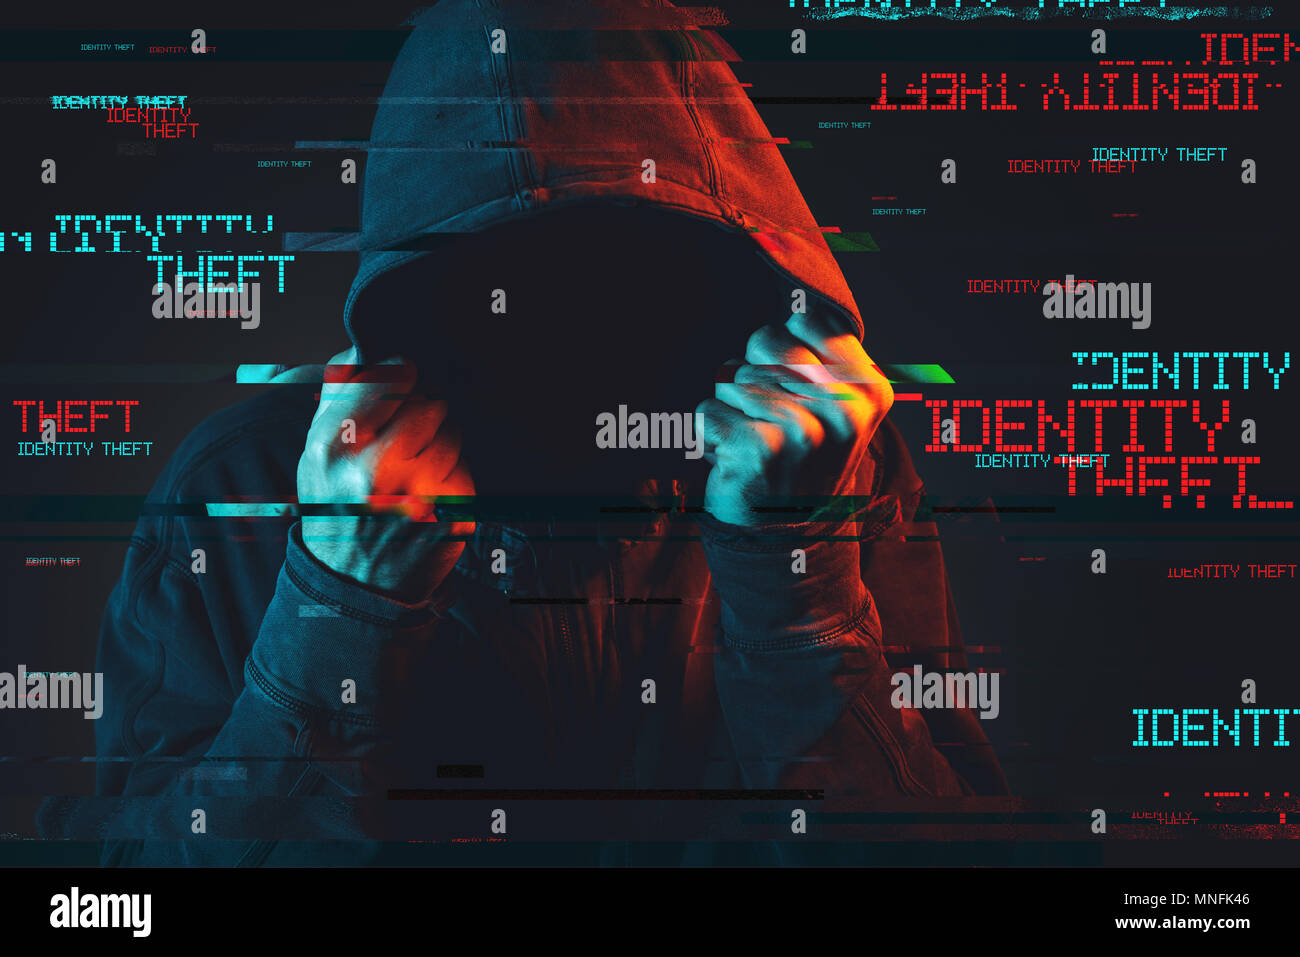 Online-identitätsdiebstahl Konzept mit gesichtslosen Hooded männliche Person, Low Key rot und blau beleuchtete Bild und digitale glitch Wirkung Stockfoto